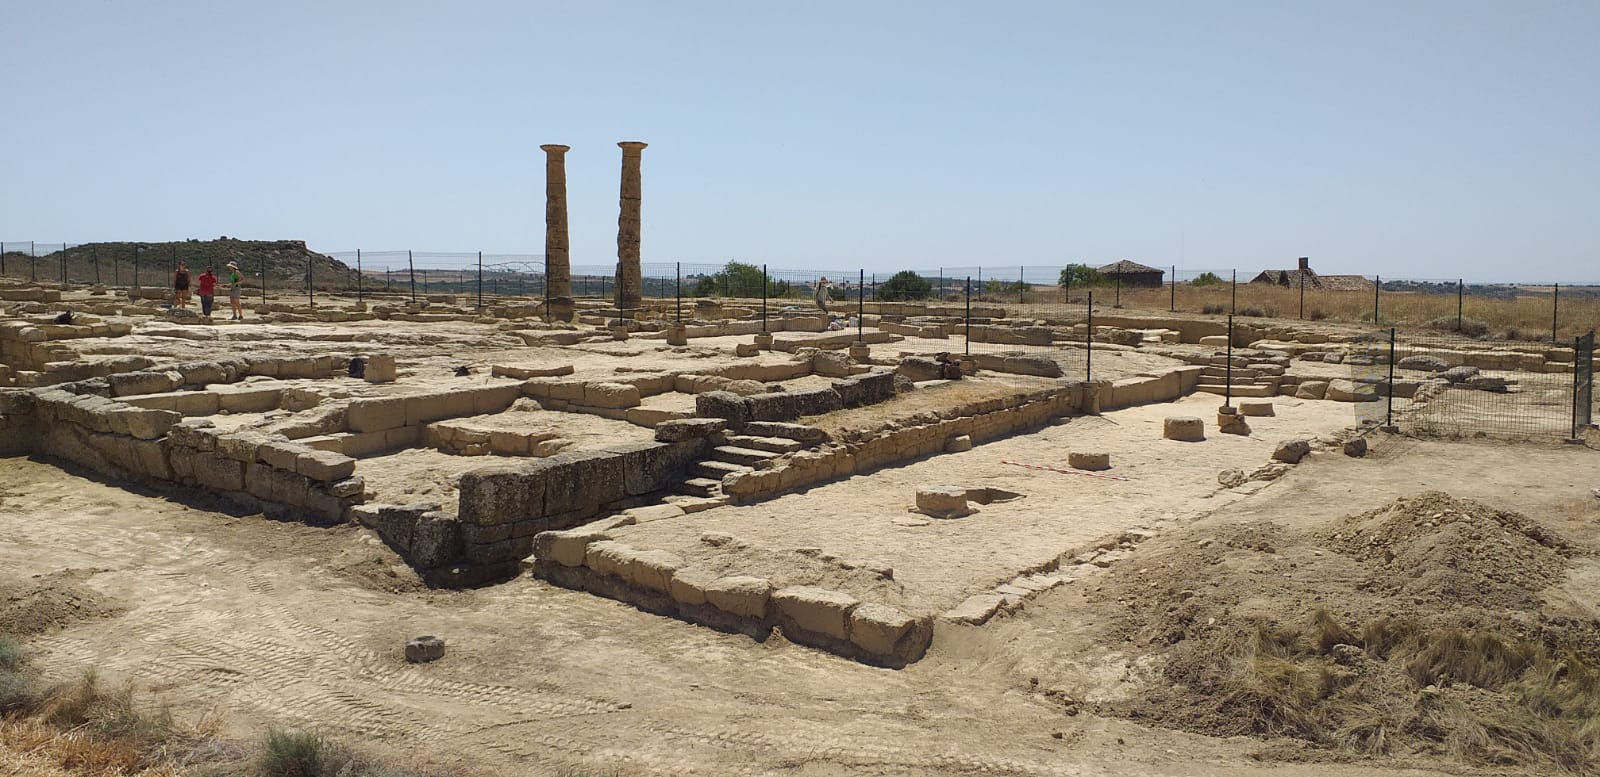 ¿Quieres saber más sobre el patrimonio arqueológico como motor de desarrollo territorial?